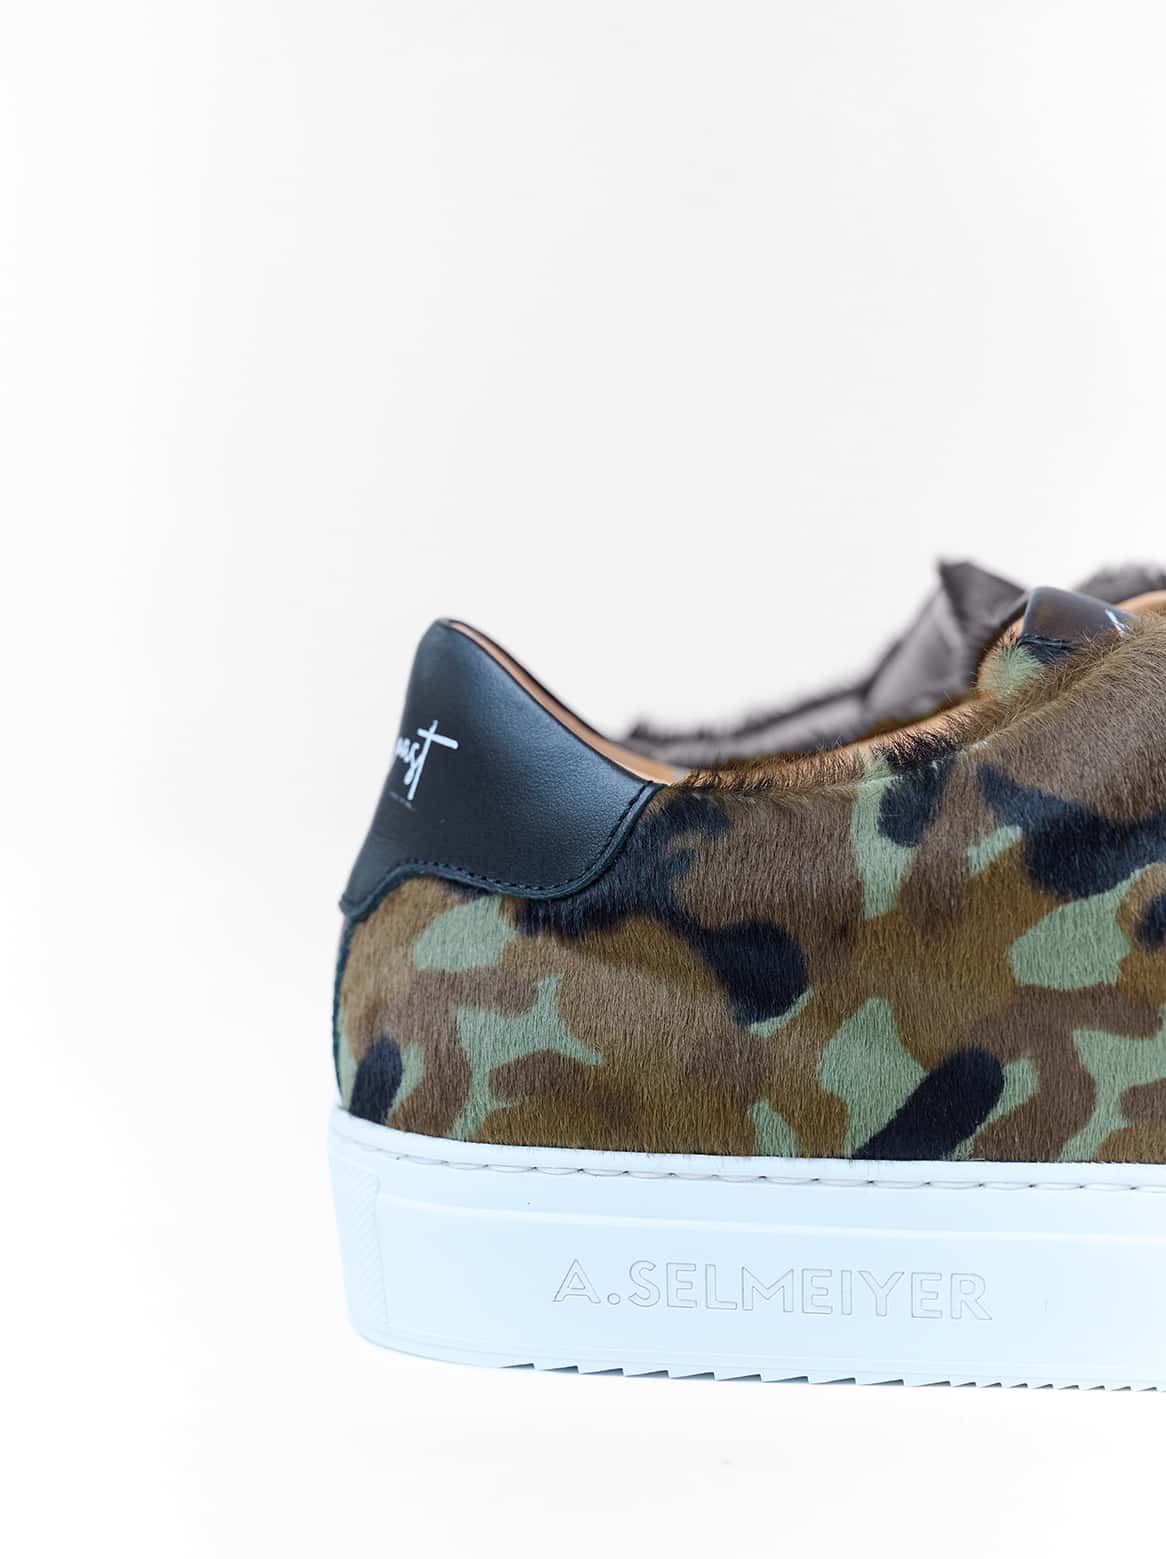 Slip-In Sneaker Camouflage